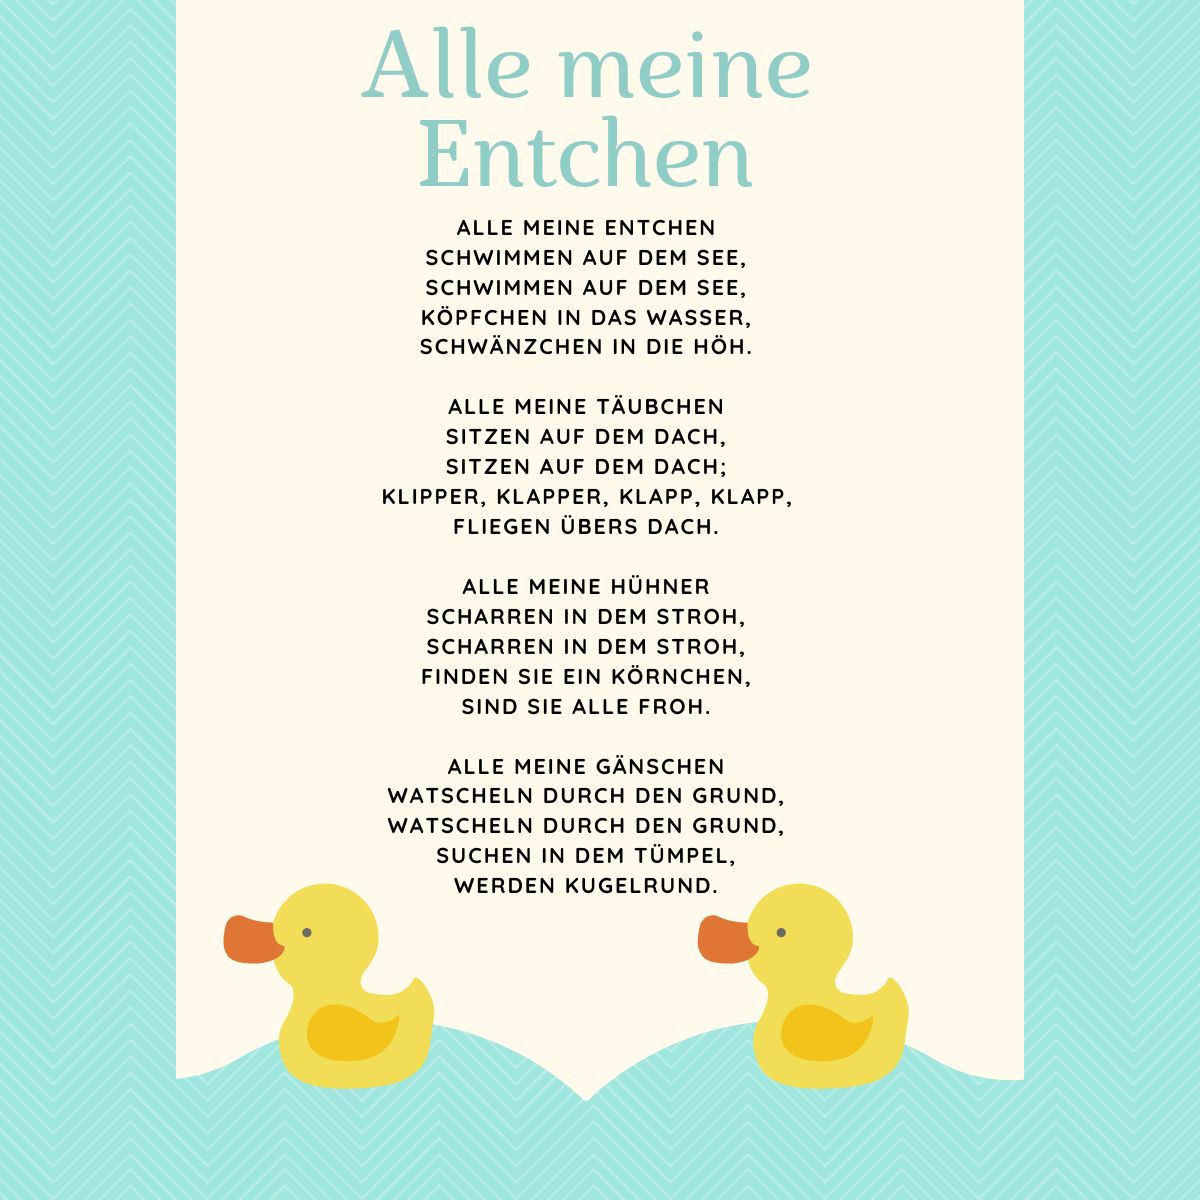 Alle Meine Entchen Lyrics with Ducks and Blue Background